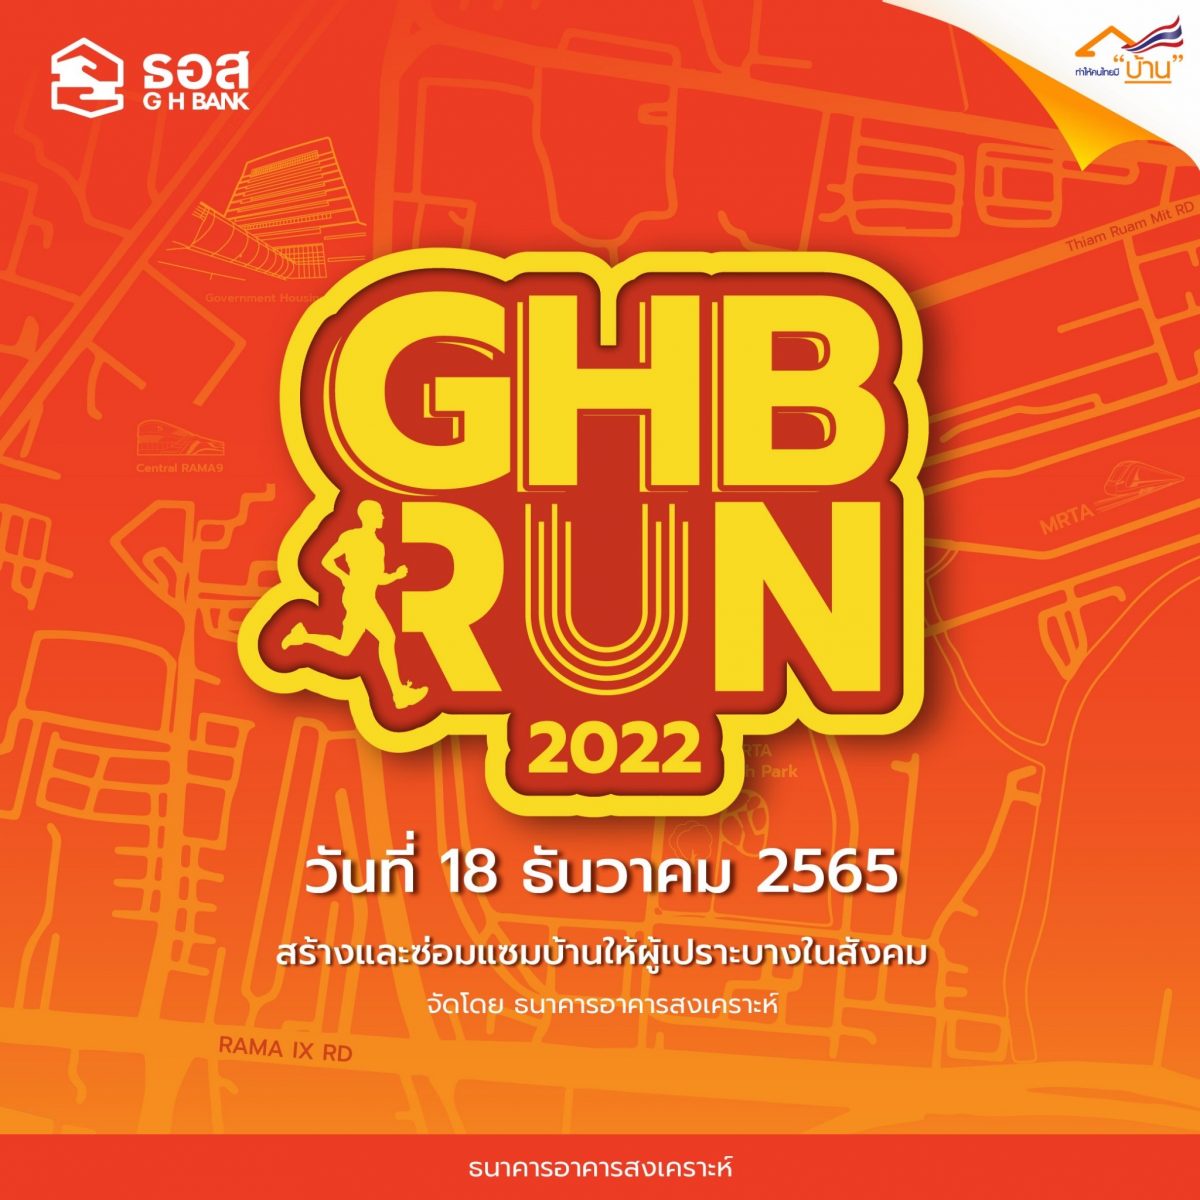 ธอส. ชวนร่วมงานเดิน-วิ่ง GHB RUN 2022 ชิงเงินรางวัลรวมถึง 3.4 แสนบาท รายได้จากค่าสมัครนำไปสร้างและซ่อมบ้านให้ผู้เปราะบางในสังคม